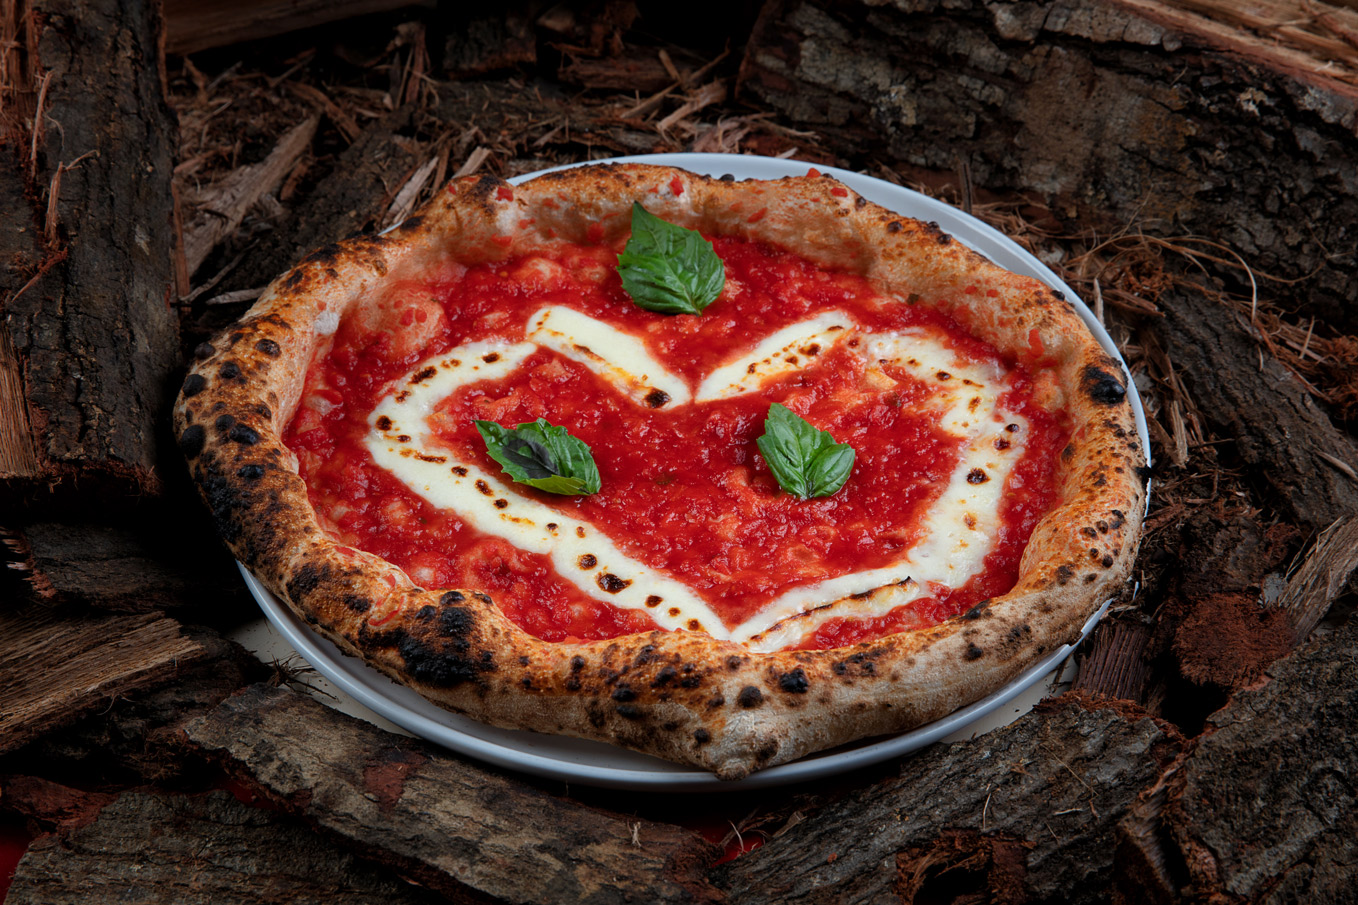 Heart-shaped Margherita pizza from Casa Bufala